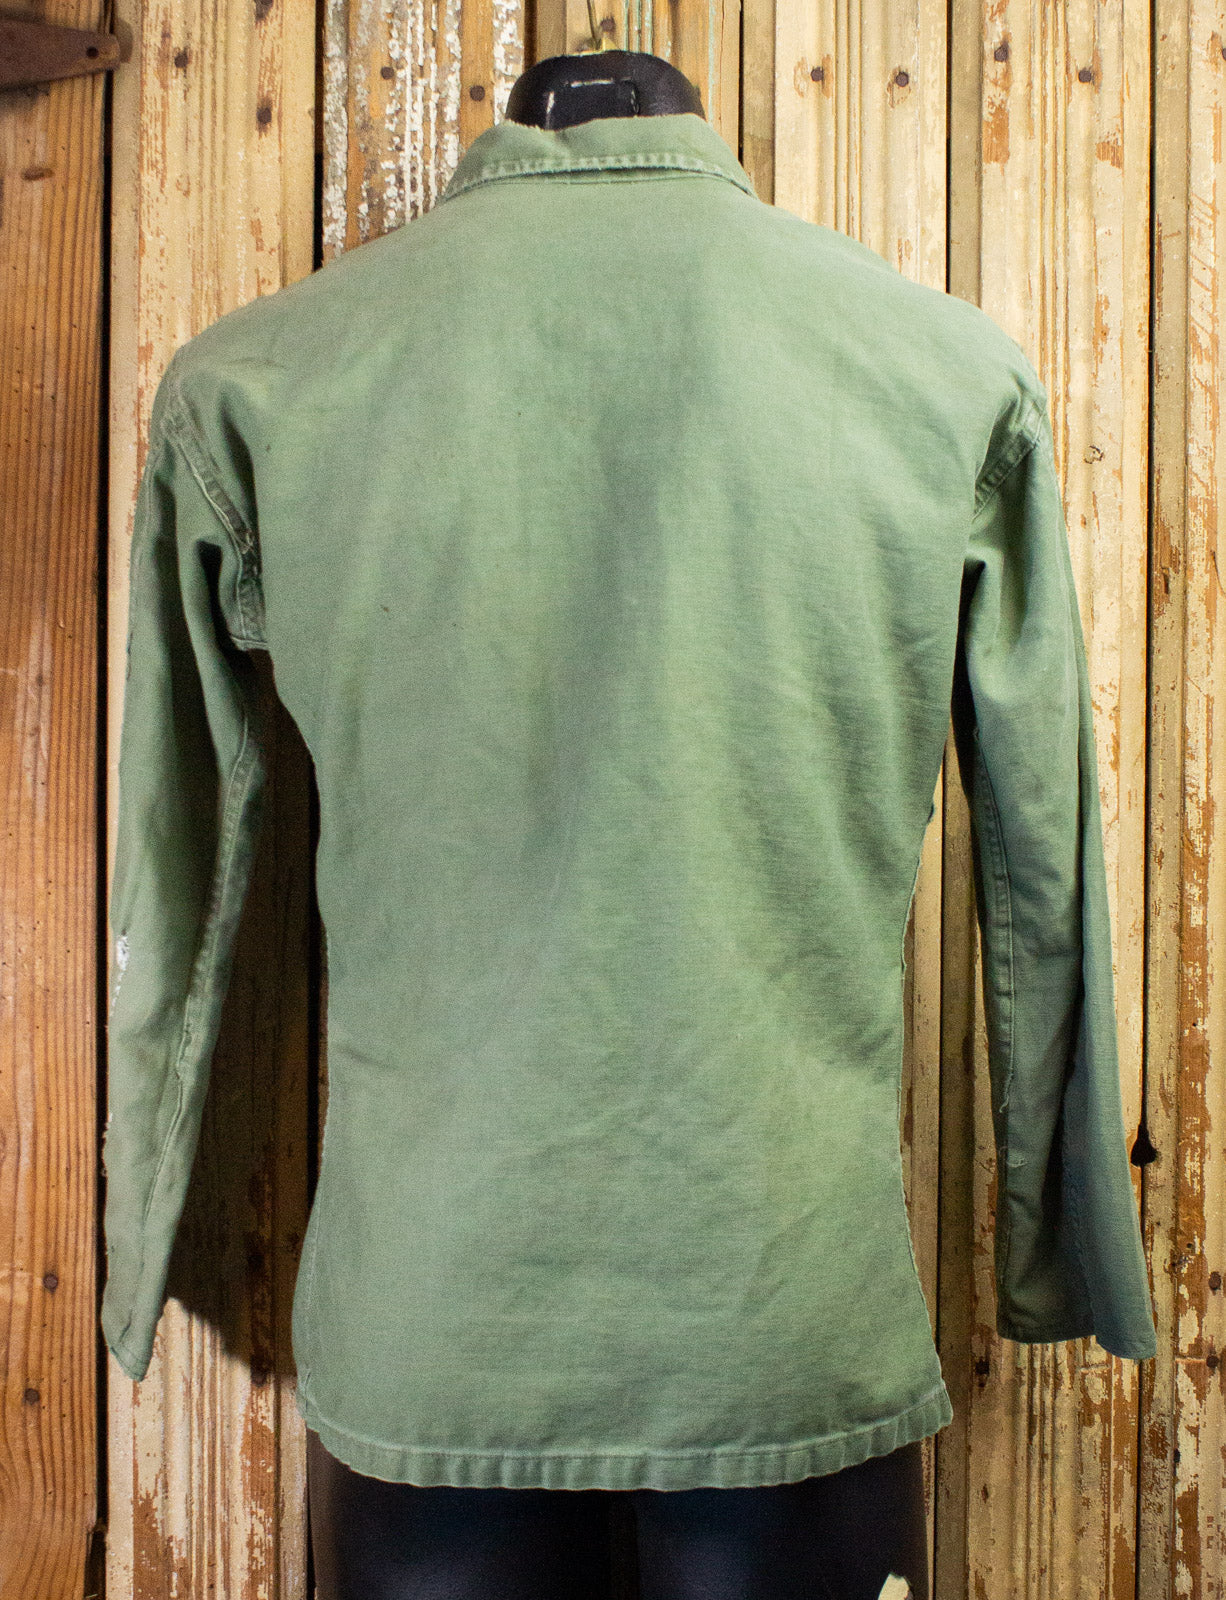 Vintage Olive Green Military Shirt/Jacket Large